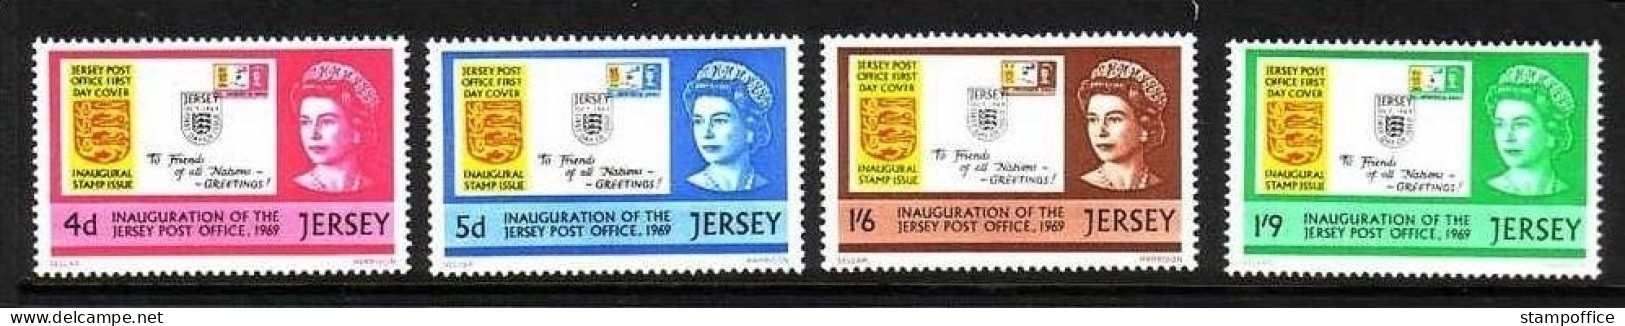 JERSEY MI-NR. 22-25 POSTFRISCH(MINT) MARKE AUF MARKE - Stamps On Stamps